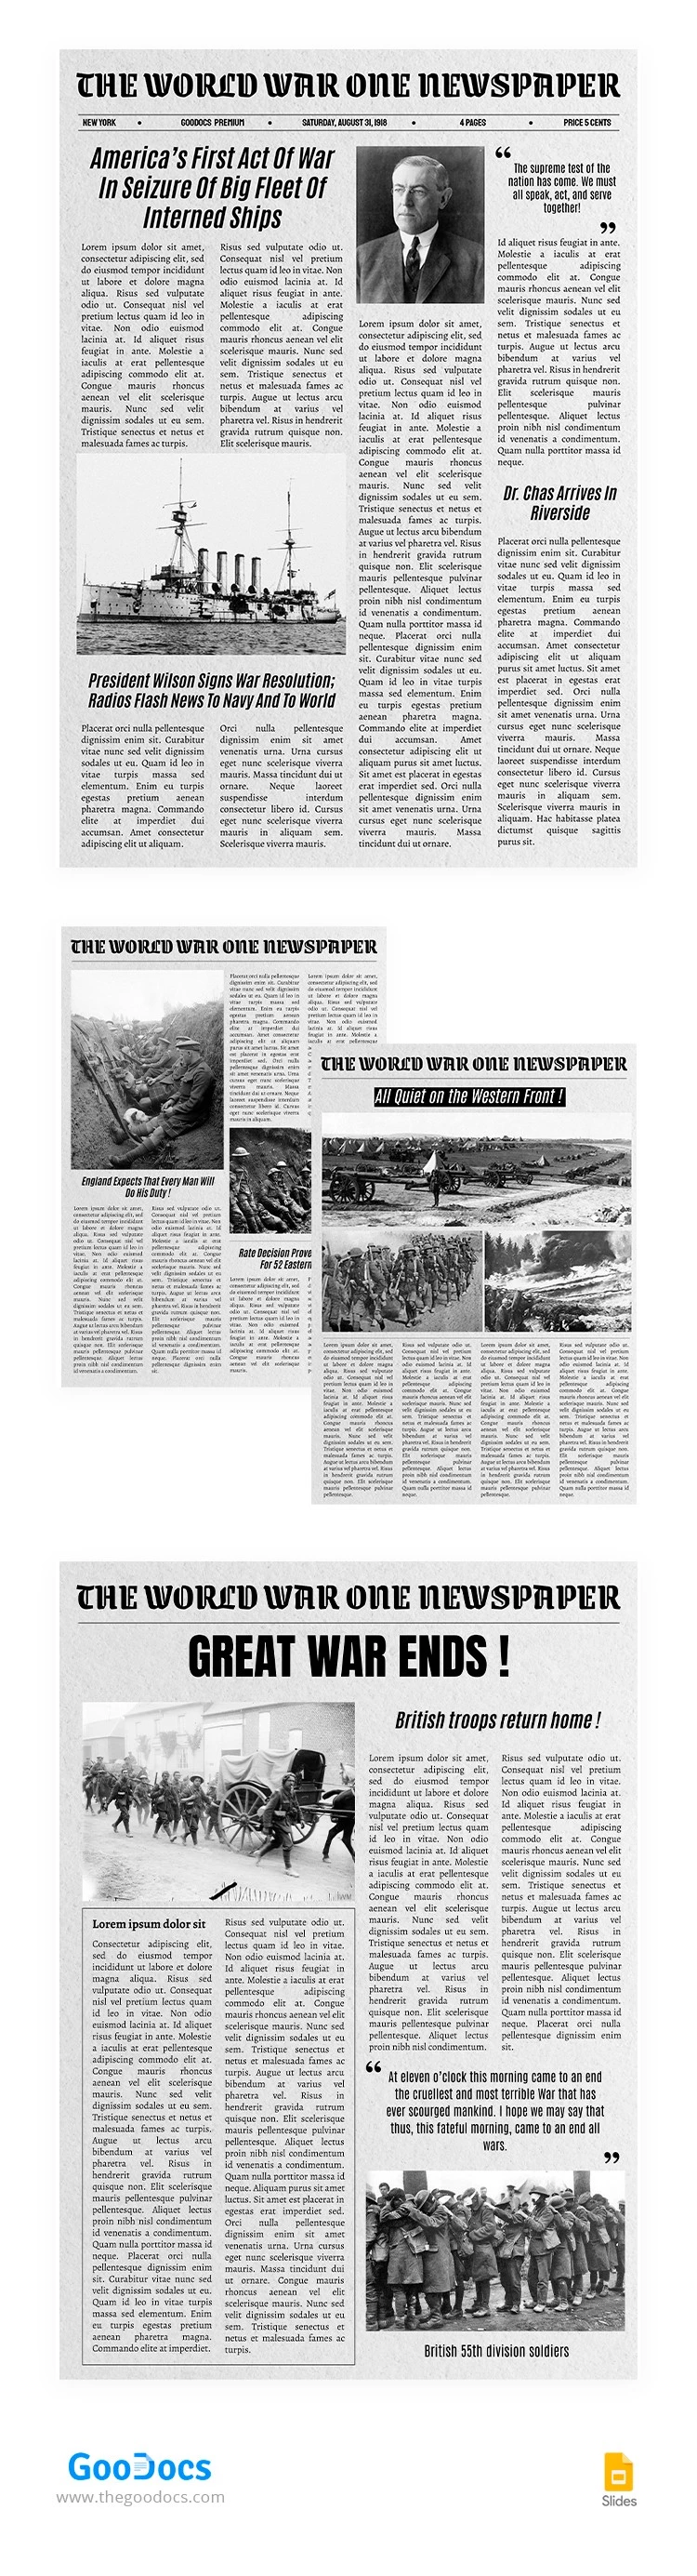 Periódico de la Primera Guerra Mundial - free Google Docs Template - 10066075